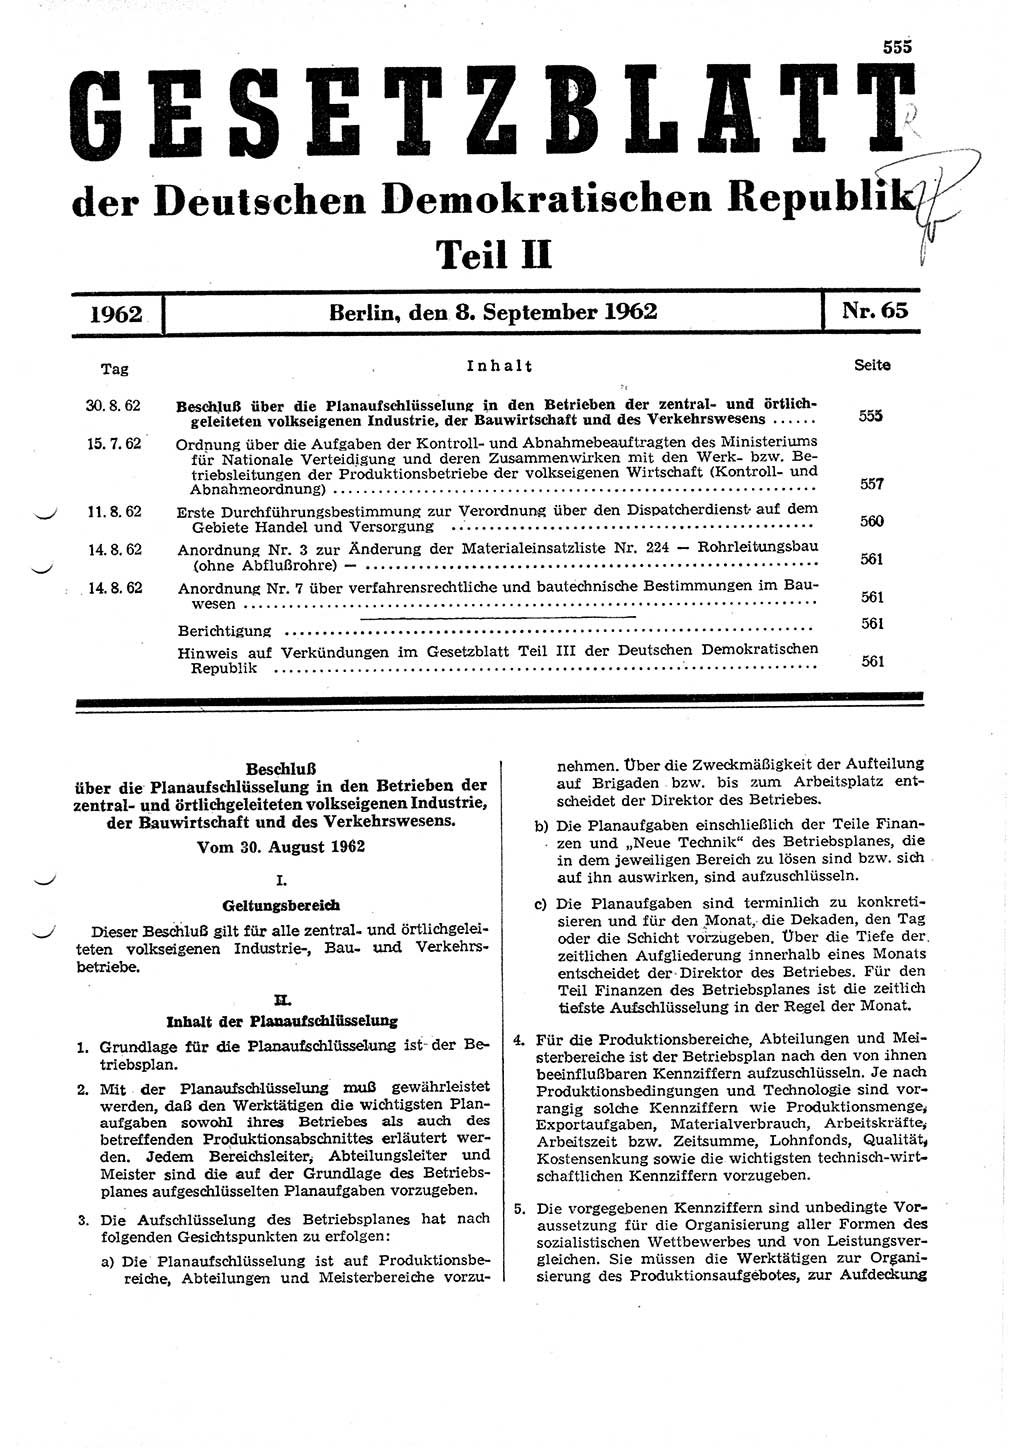 Gesetzblatt (GBl.) der Deutschen Demokratischen Republik (DDR) Teil ⅠⅠ 1962, Seite 555 (GBl. DDR ⅠⅠ 1962, S. 555)